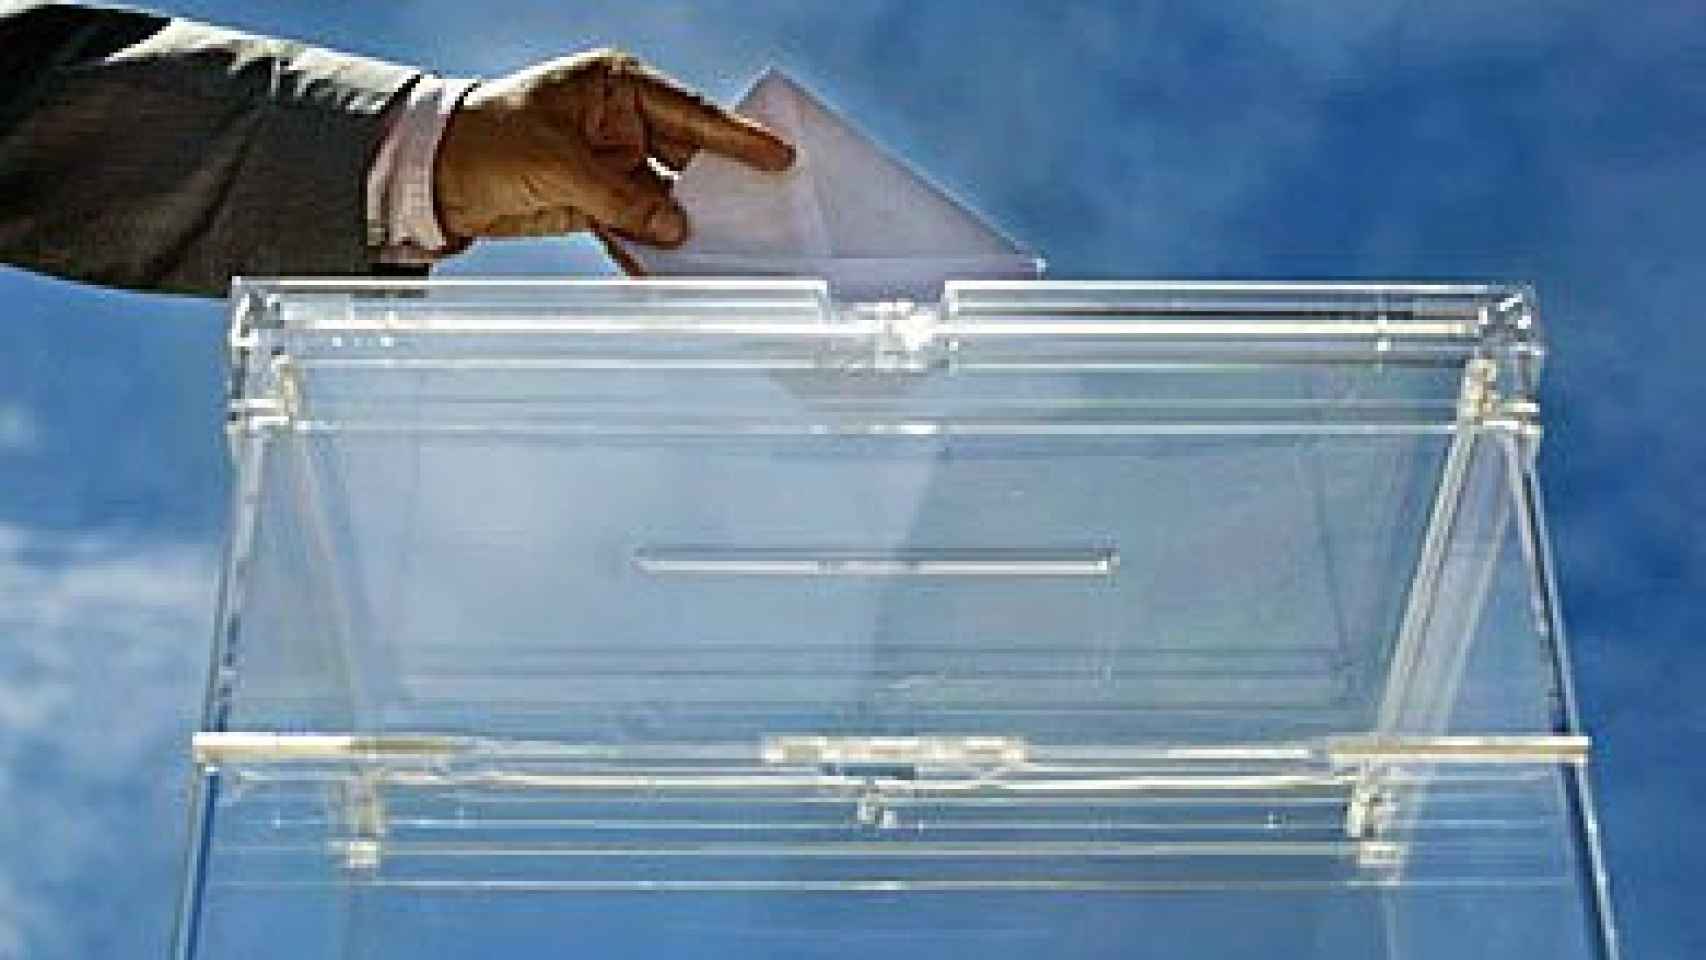 Elecciones locales en toda España y autonómicas en trece CCAA